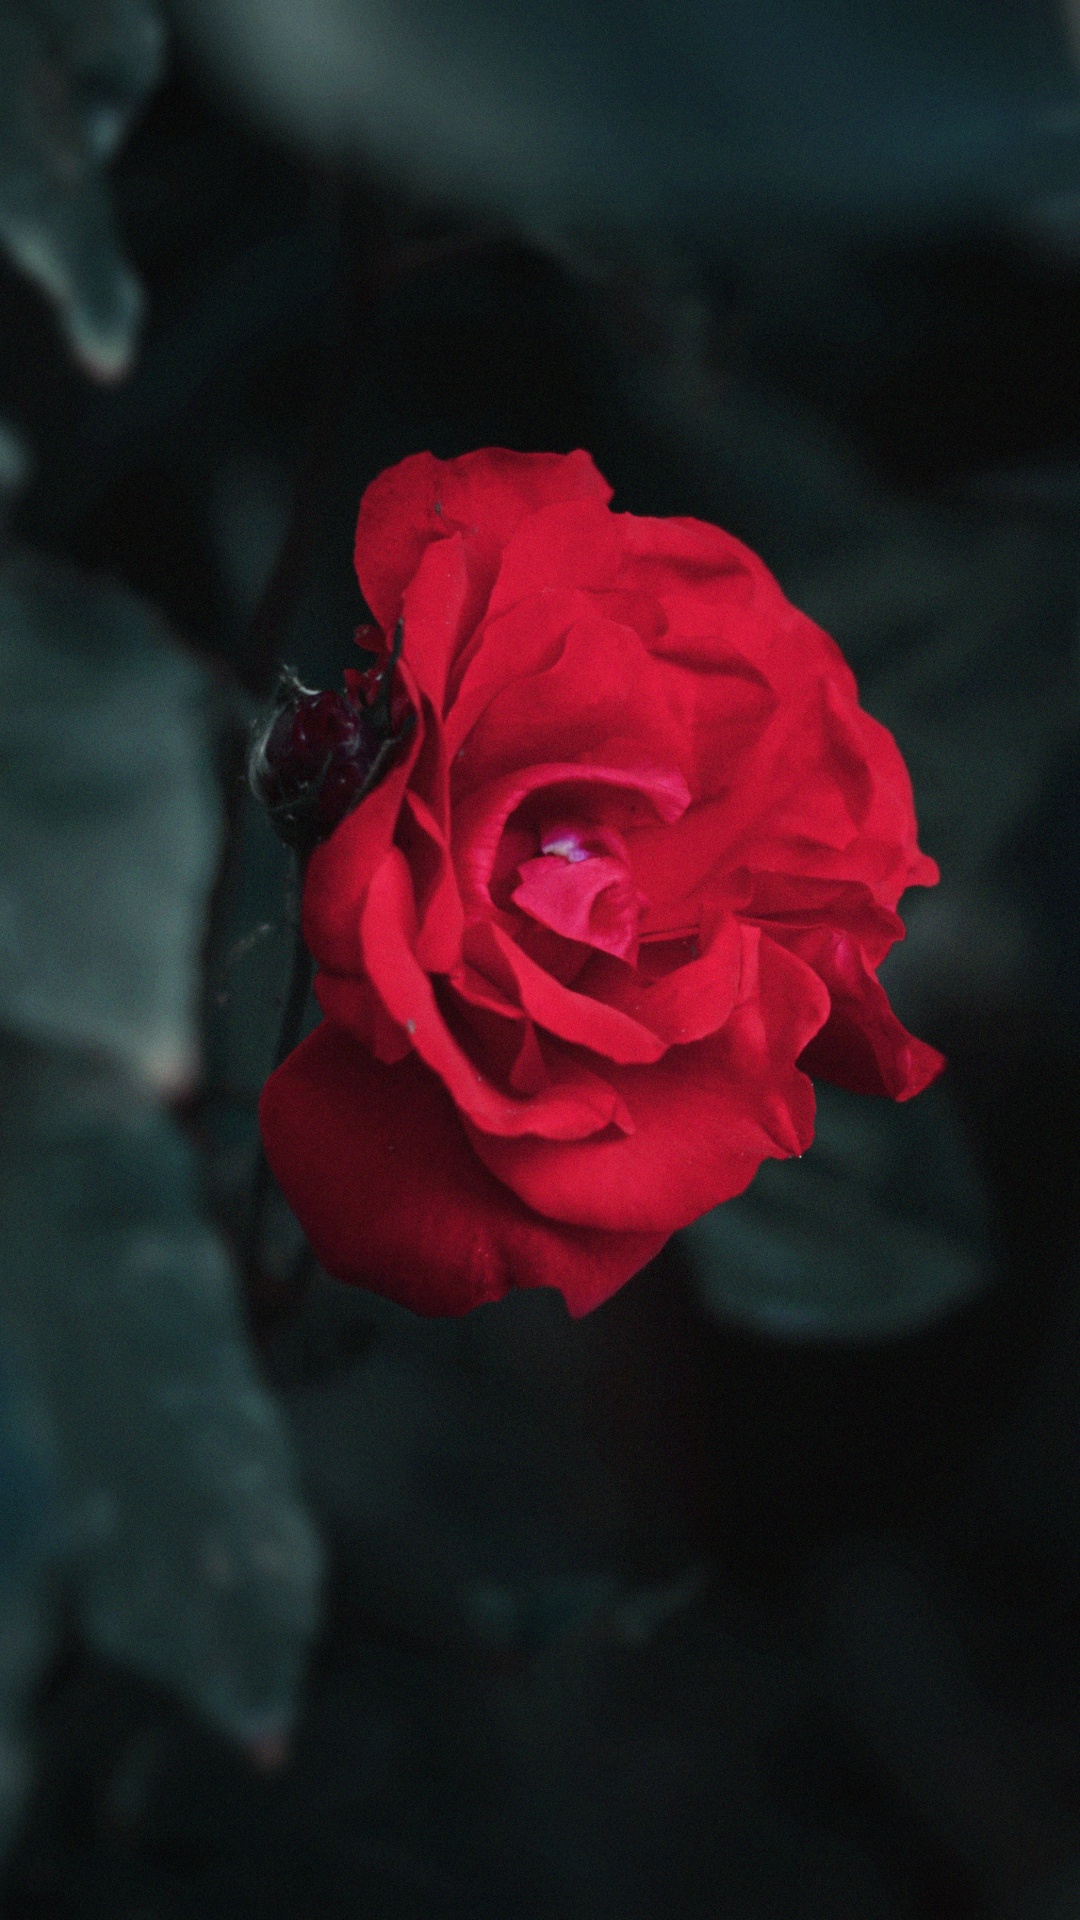 Rosa Roja en Fotografía de Cerca. Wallpaper in 1080x1920 Resolution